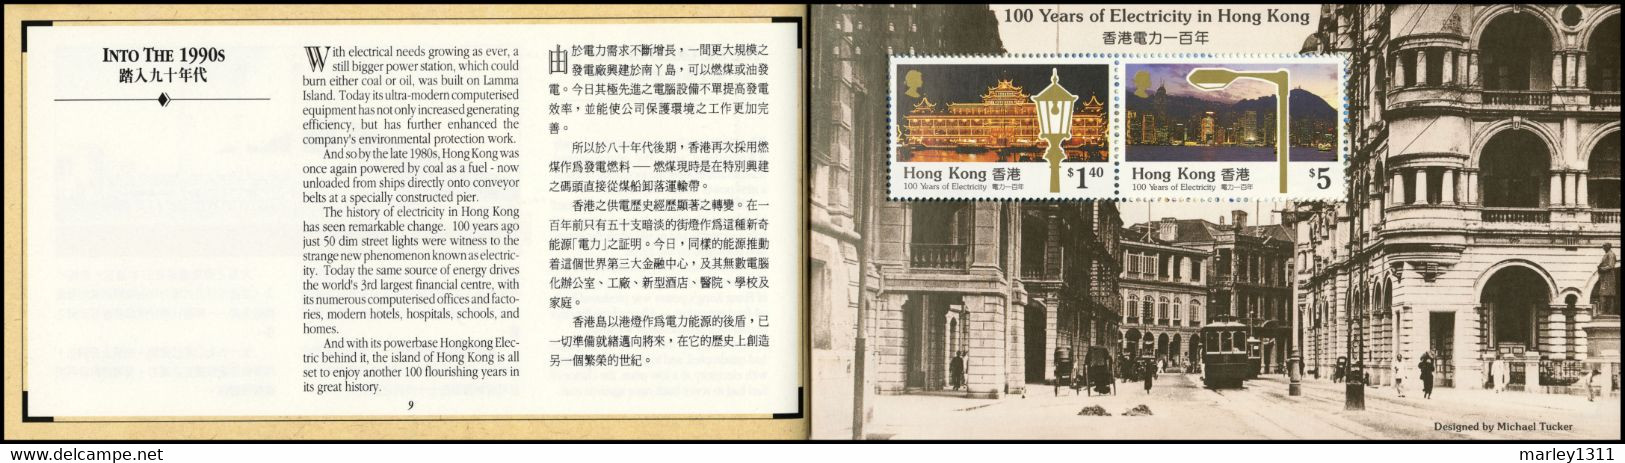 HONG KONG (1990) Carnet de prestige n°621 Centenaire de l'électricité à Hong Kong